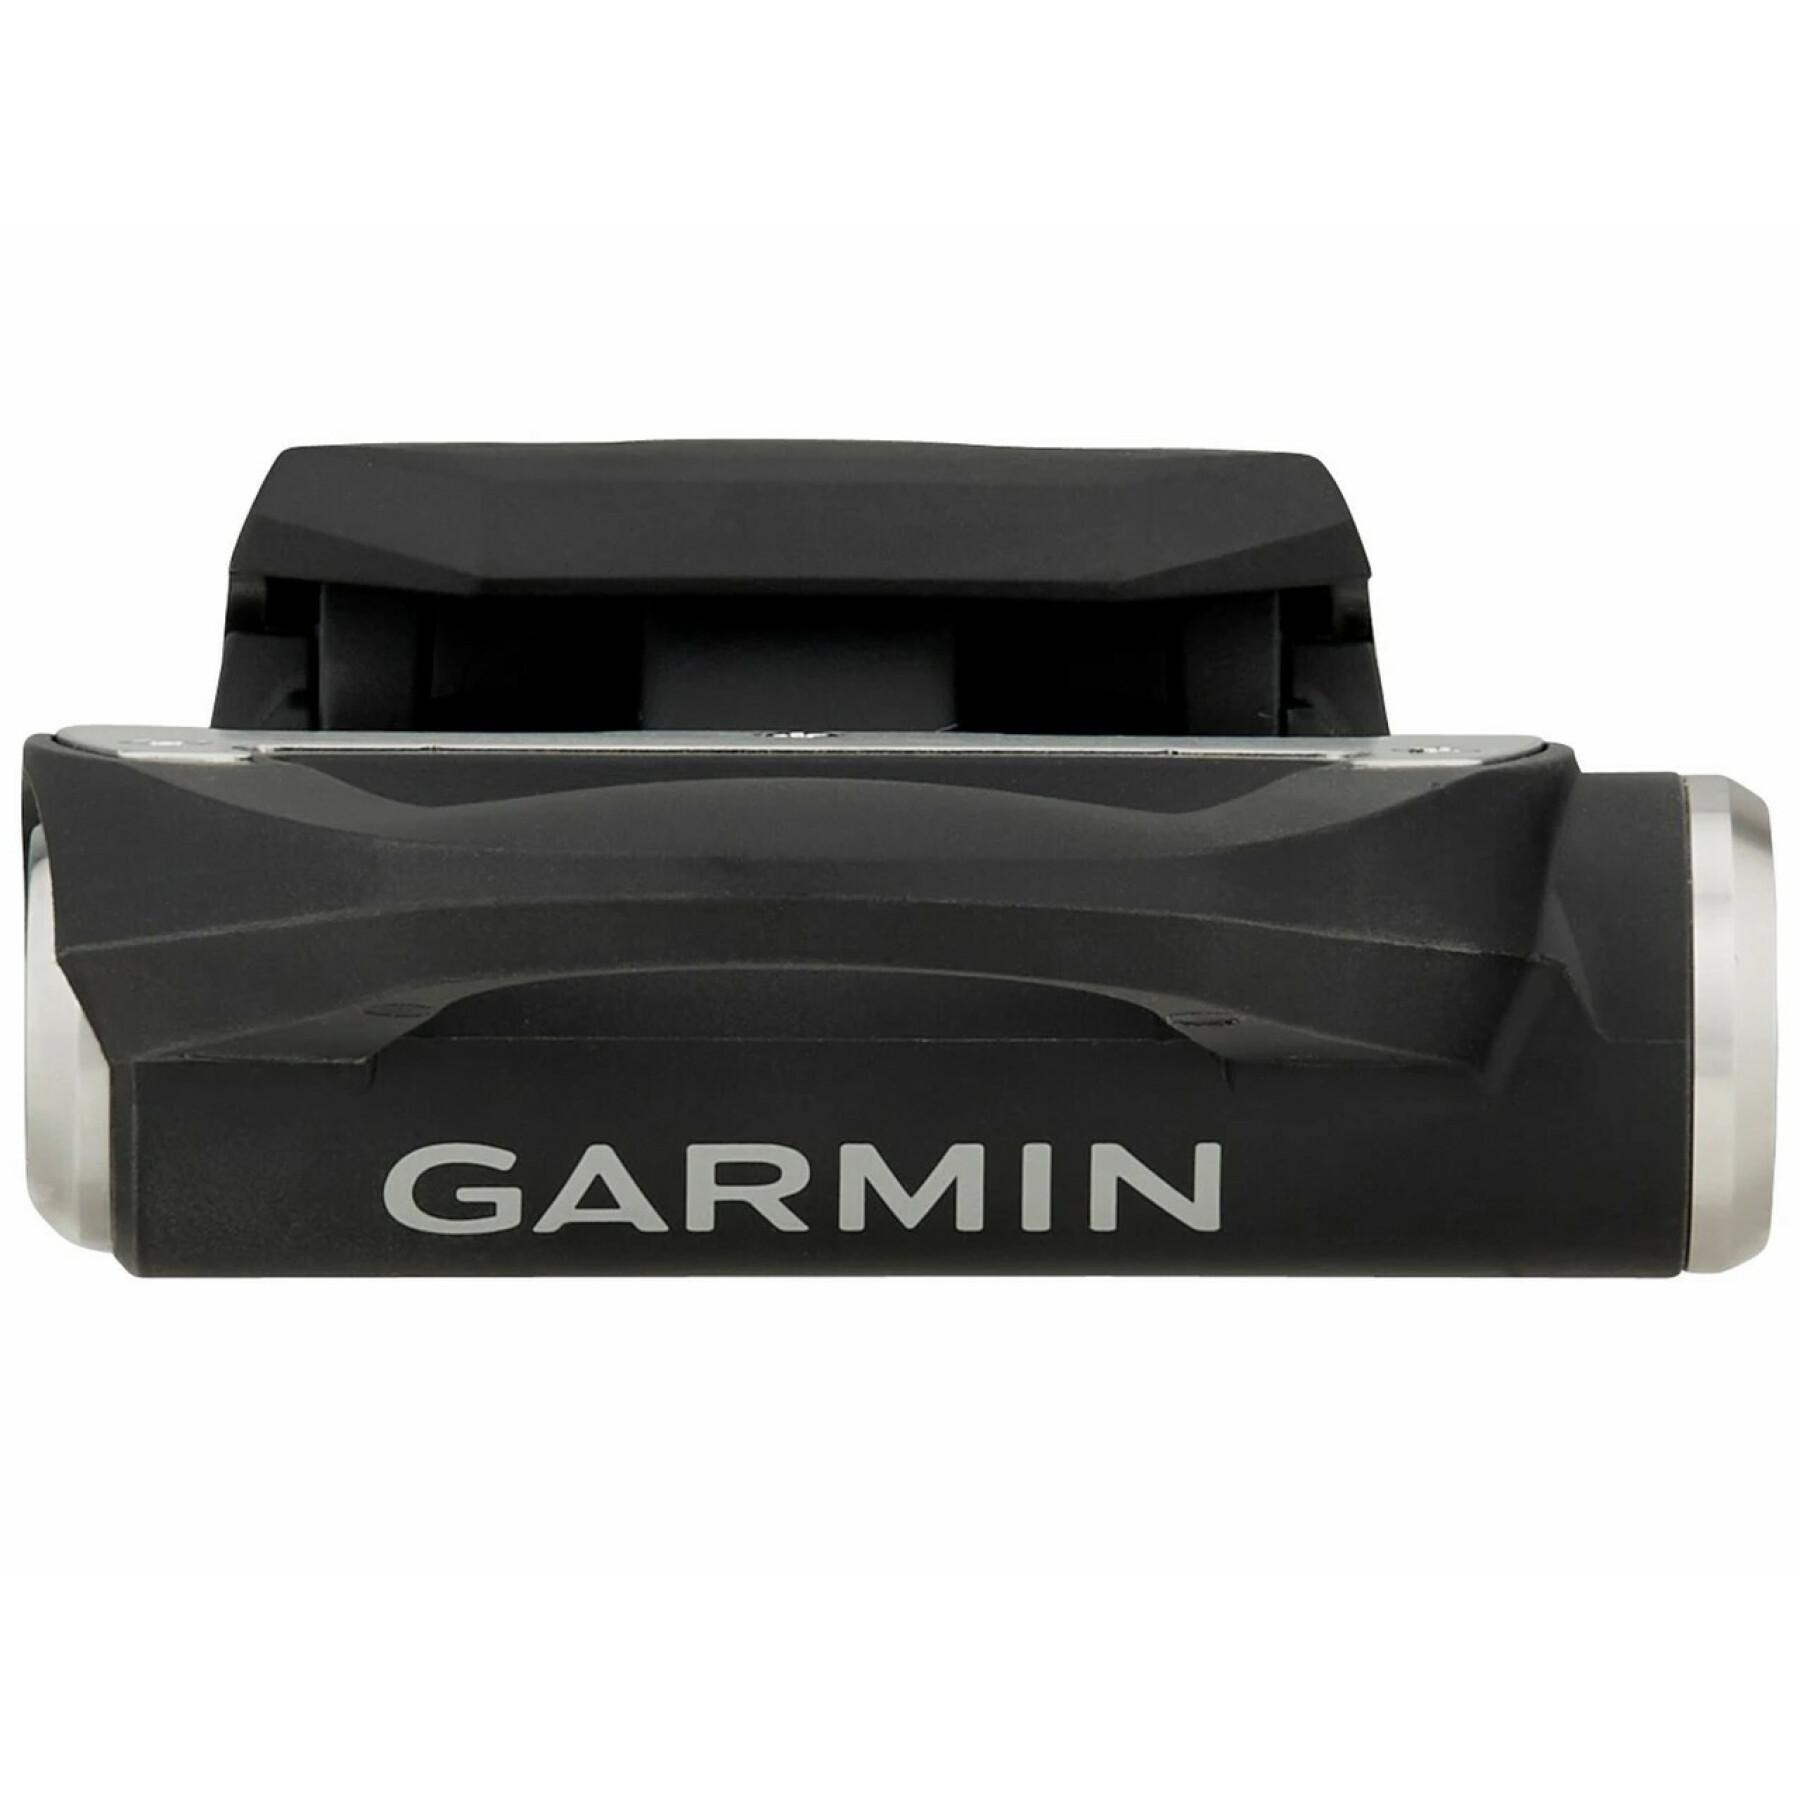 Kit de reconstrução do pedal direito Garmin Rally rs